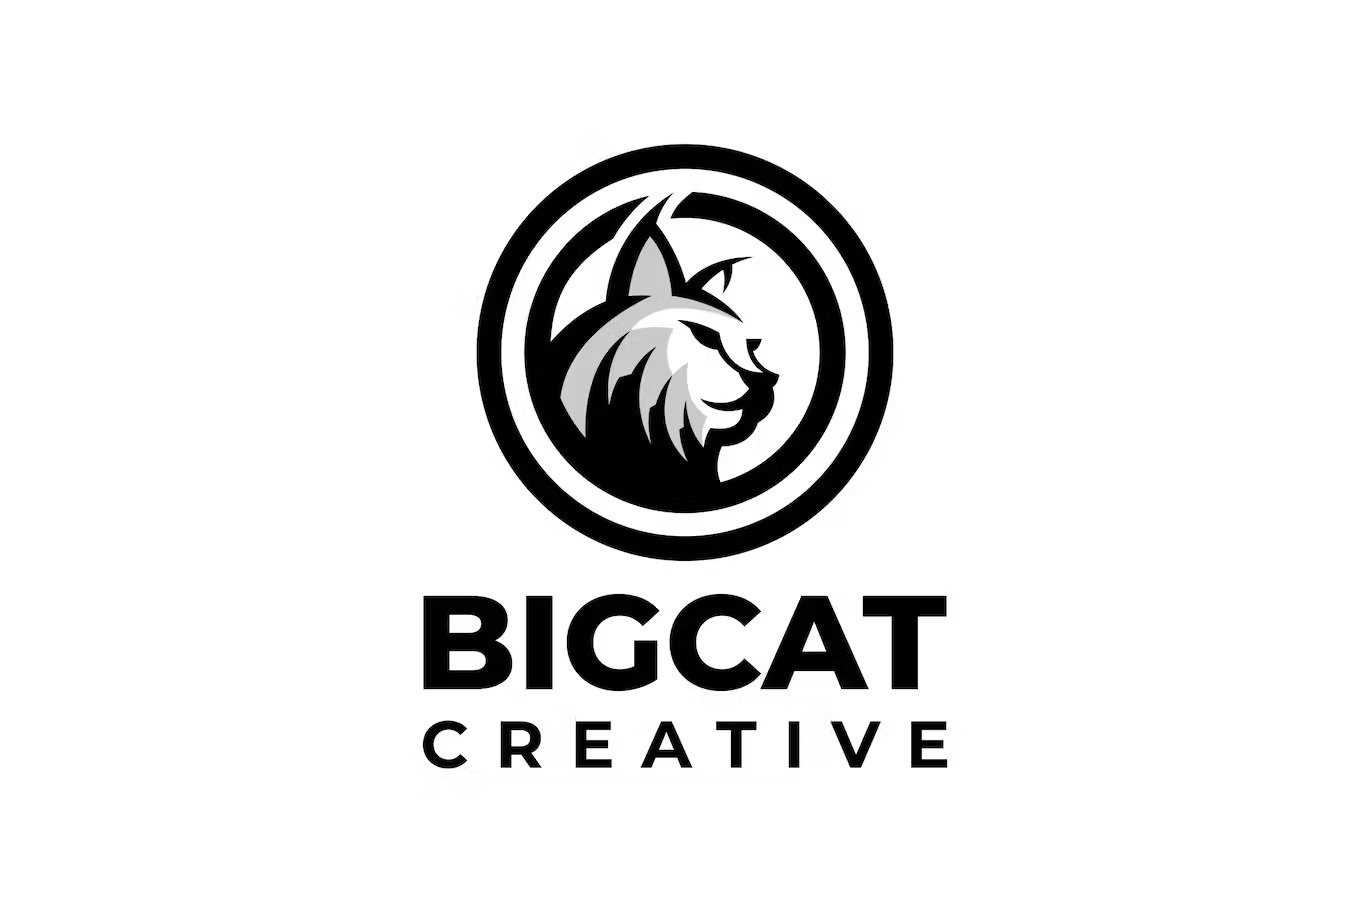 A big cat circle logo template